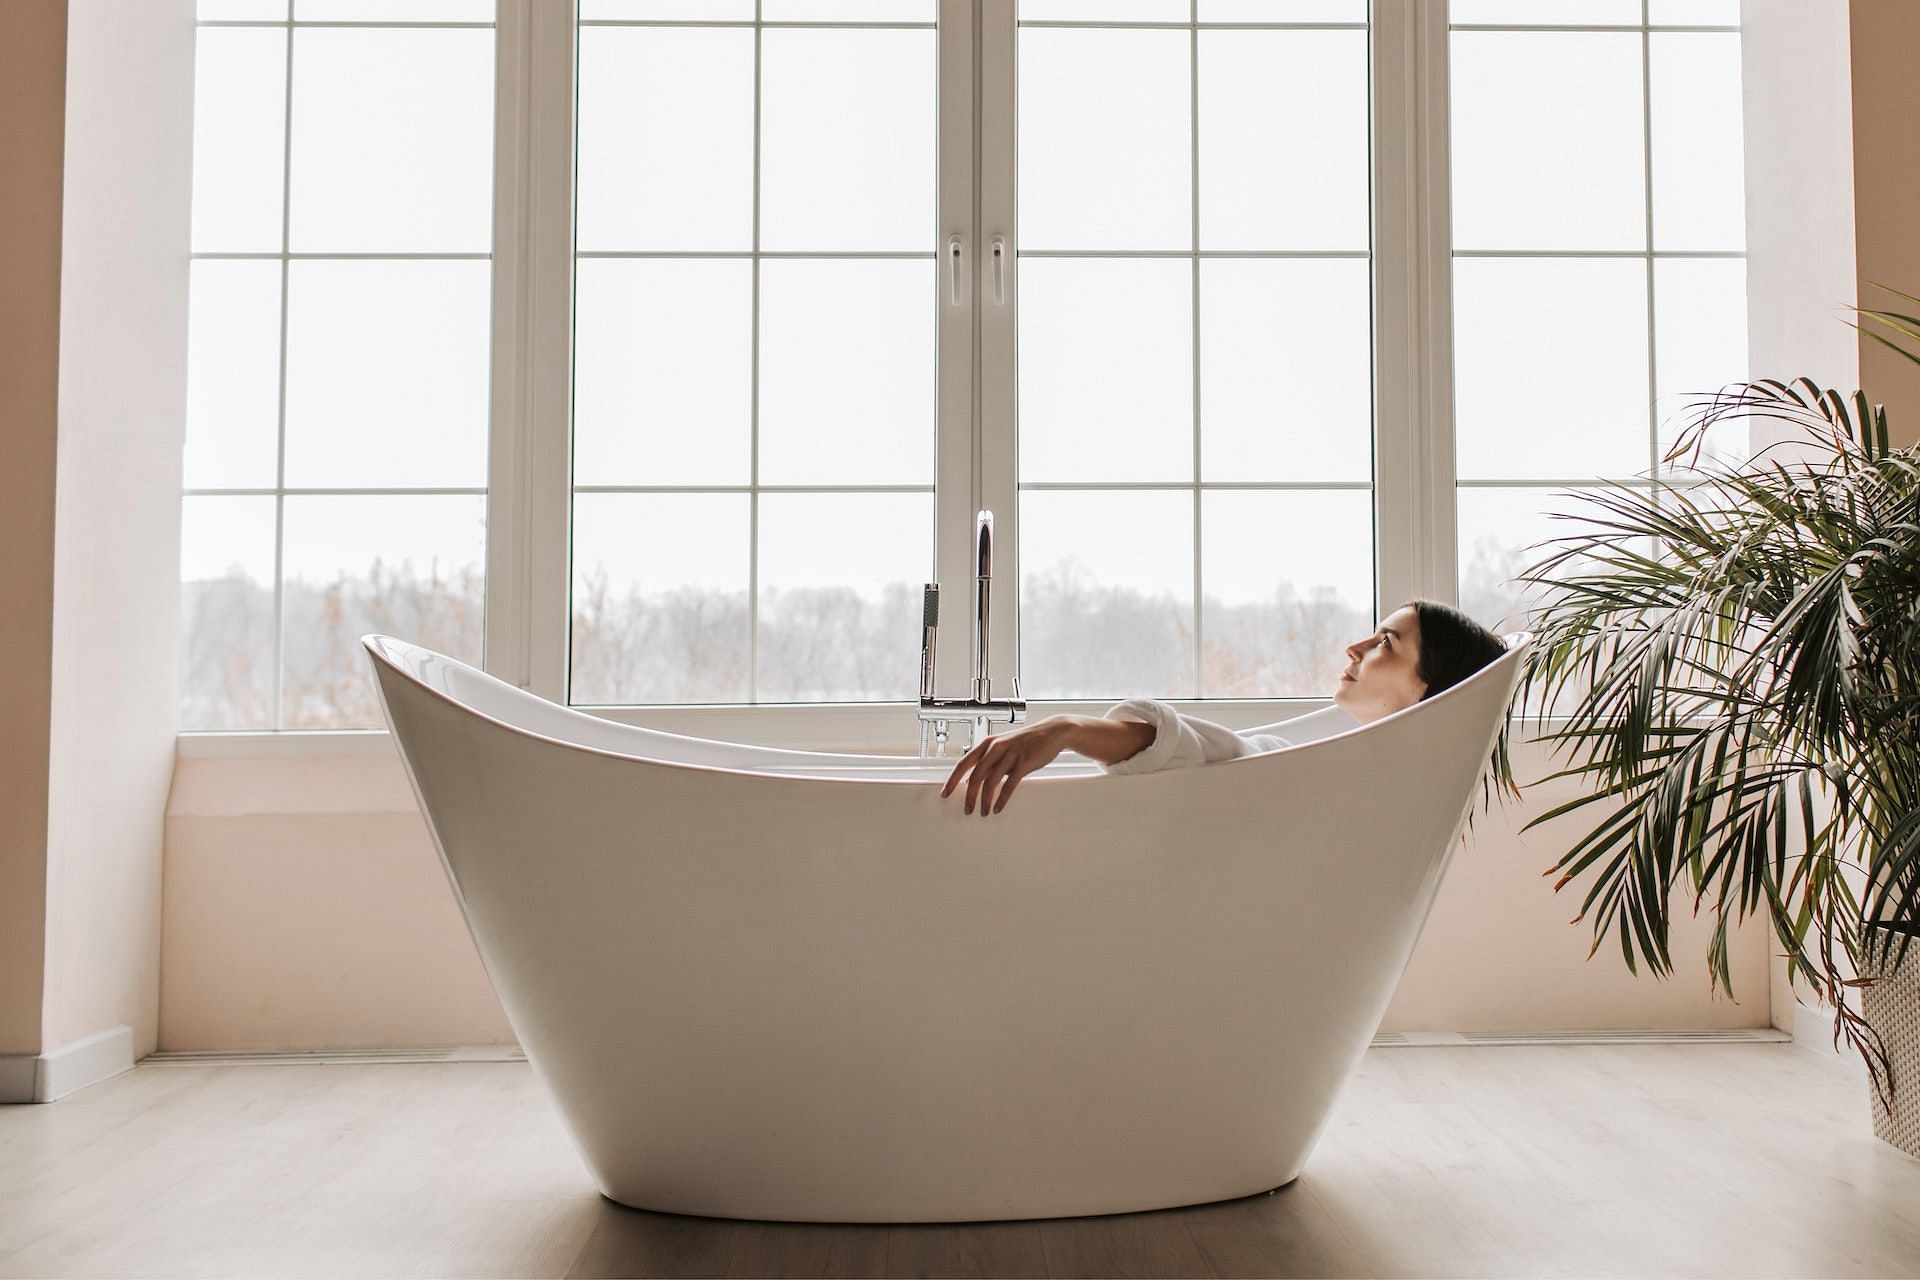 Hot baths. (Image via Pexels/ Vlada Karpovich)